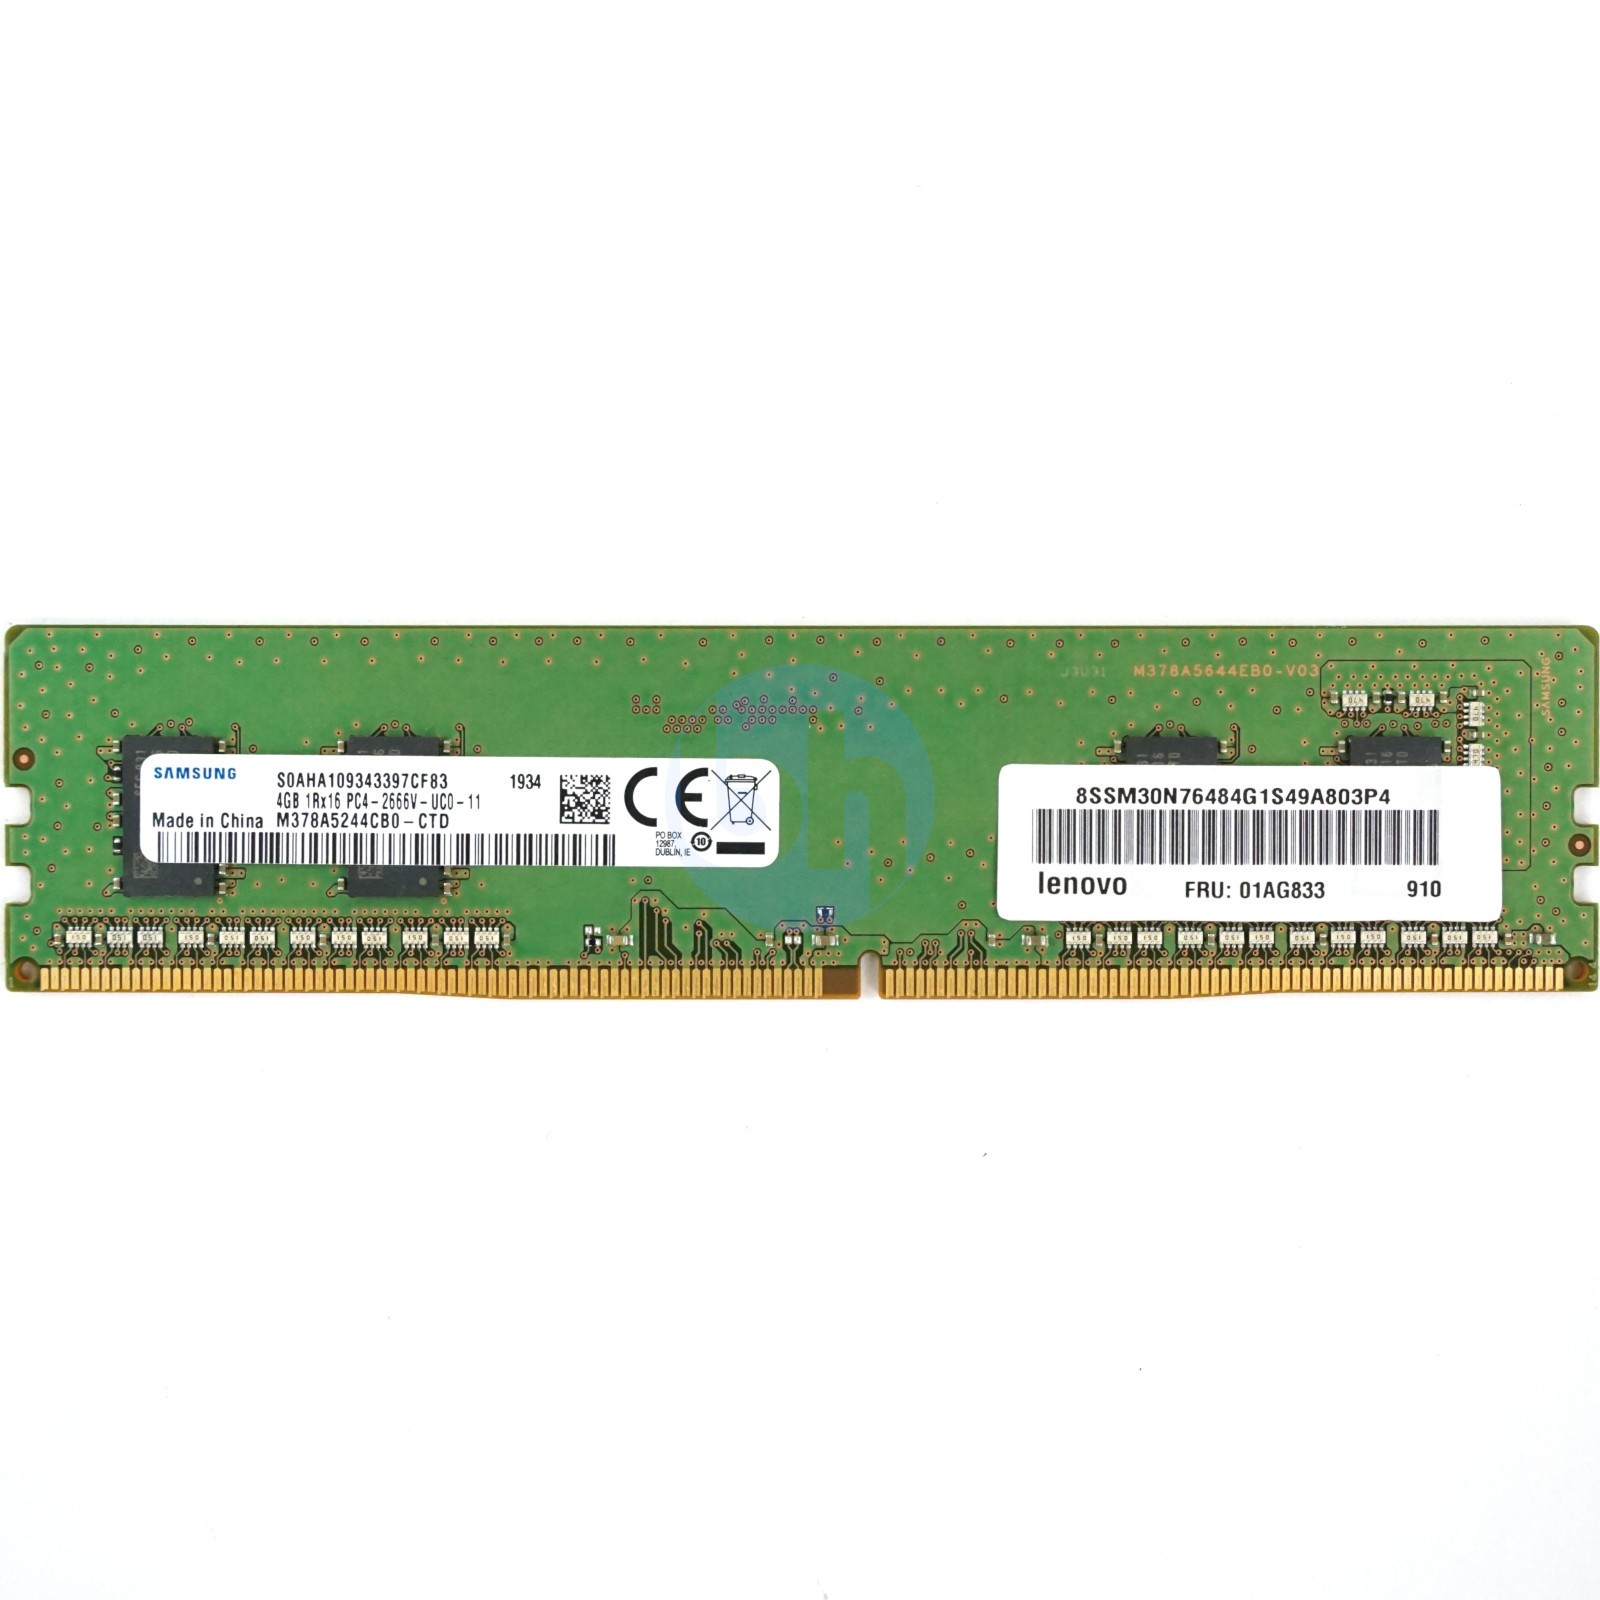 4GB - PC4-21300V-U (1RX16, DDR4-2666MHz)